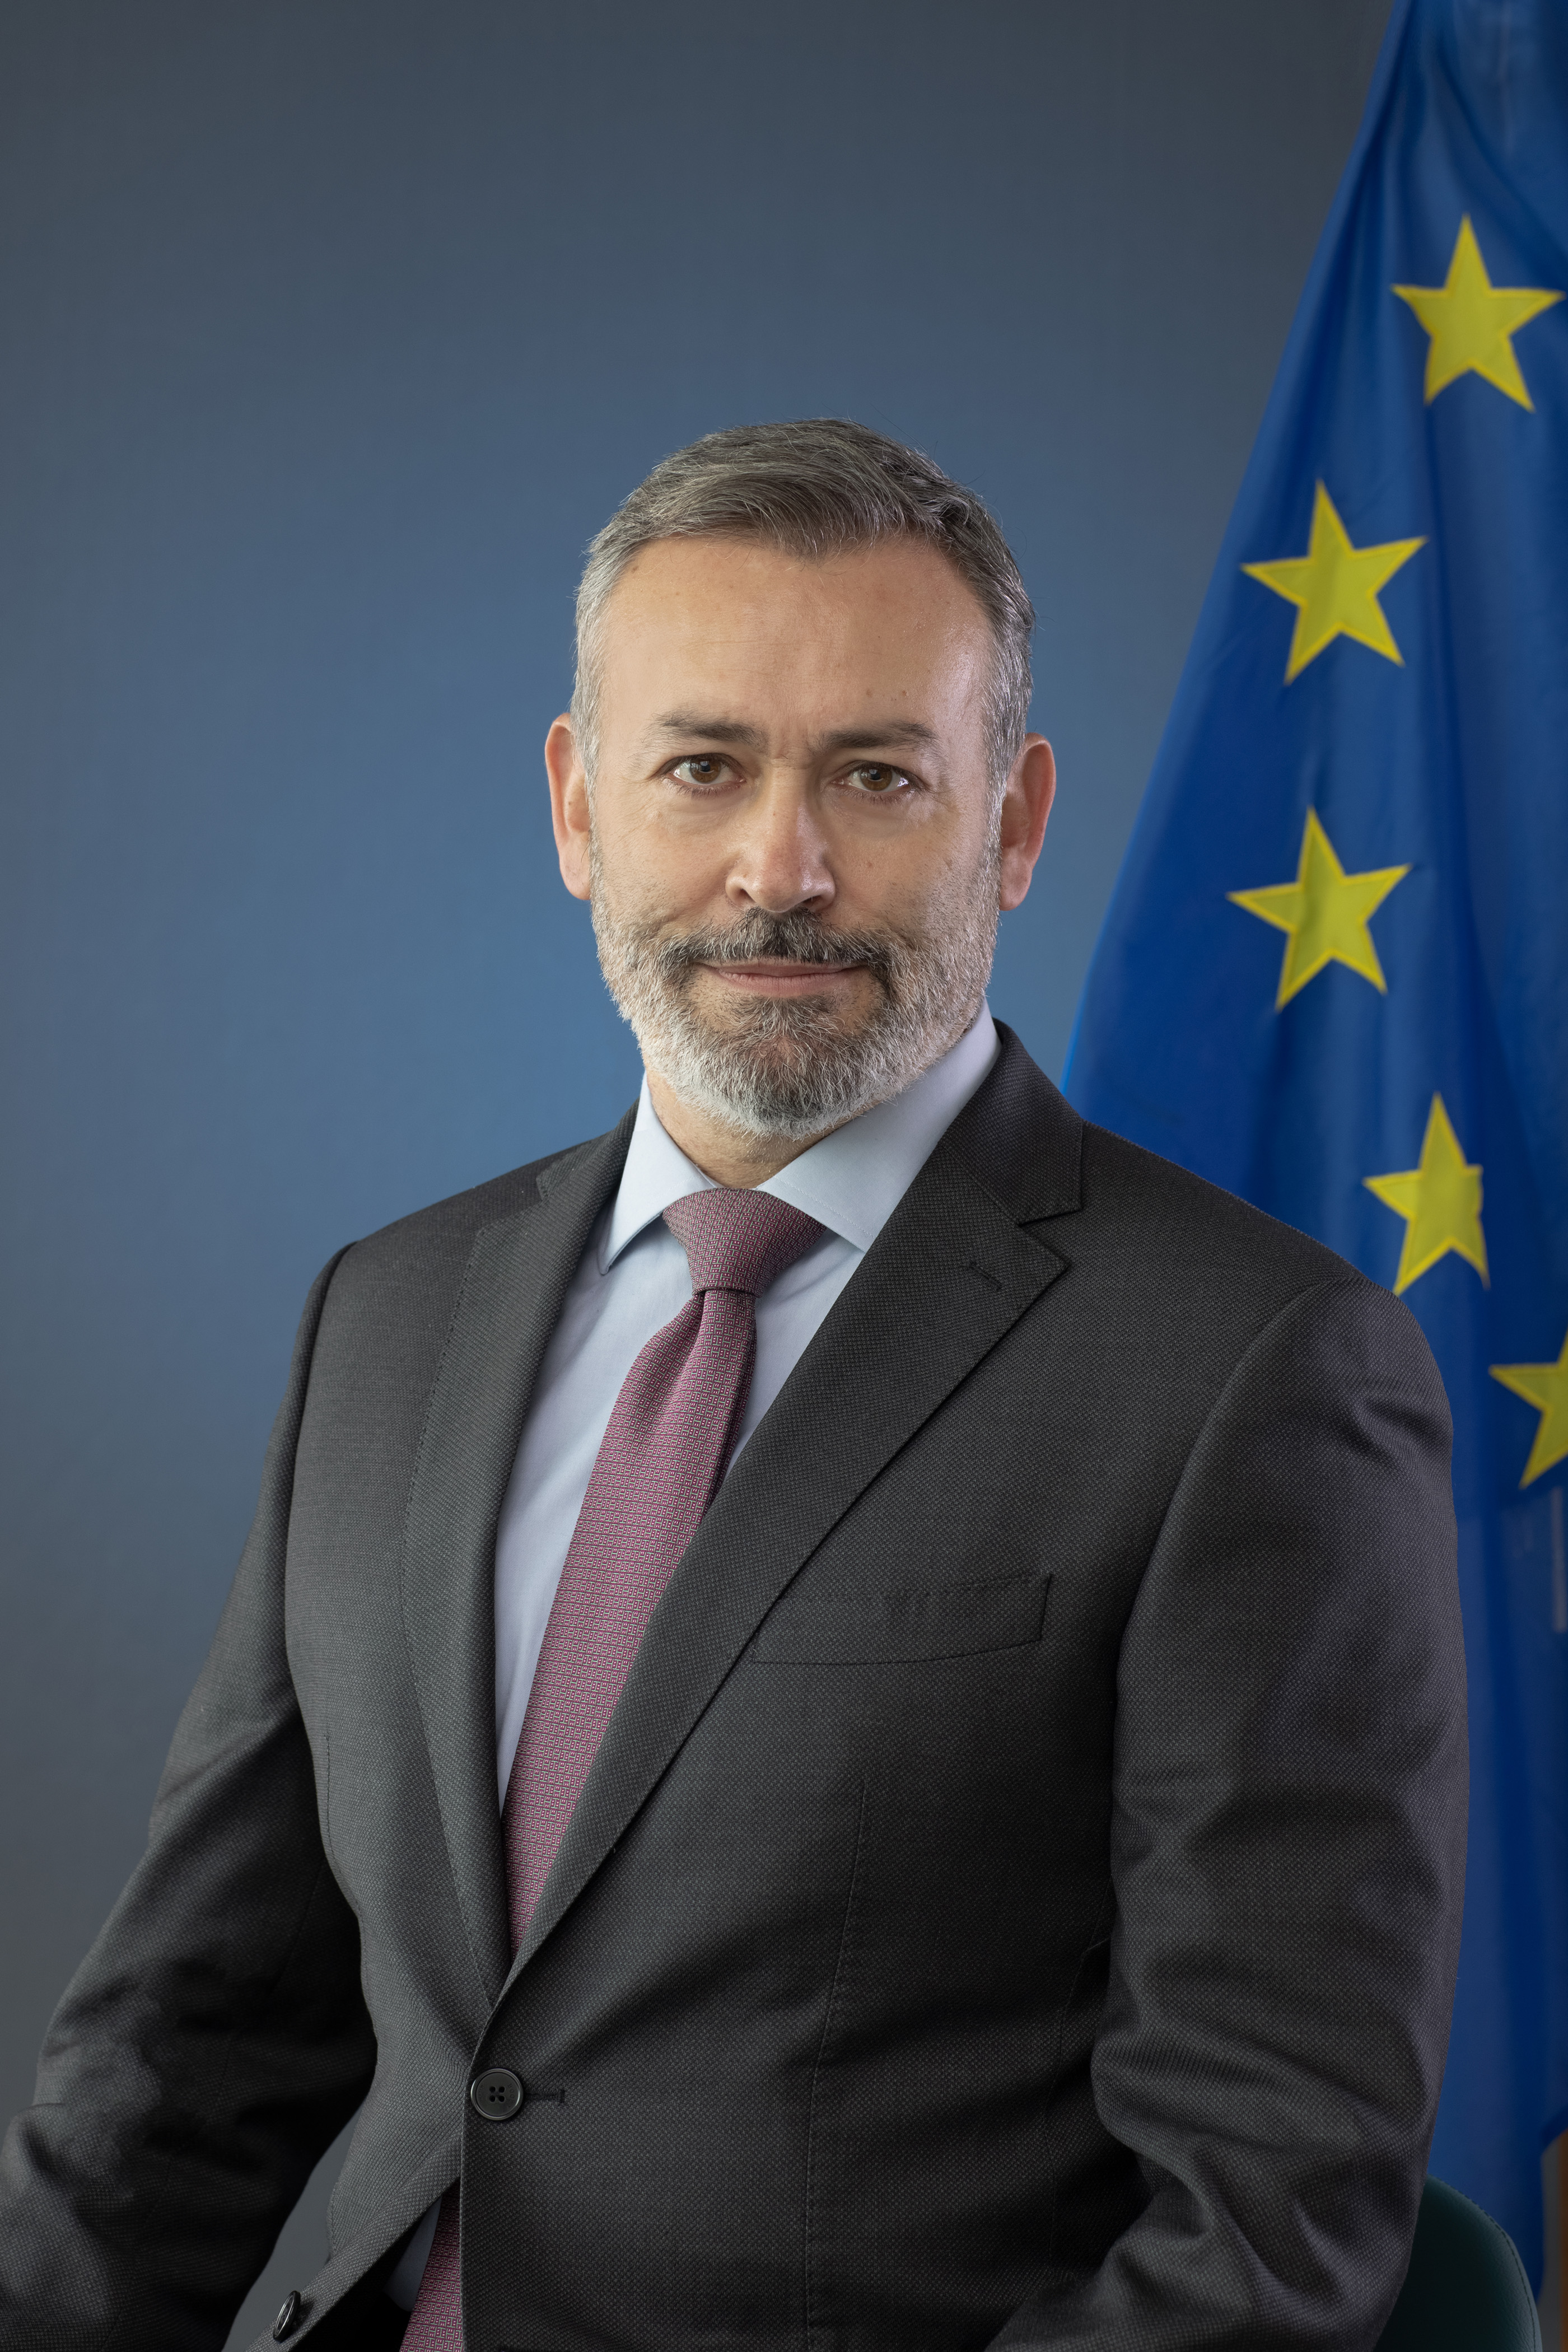 Photograph of European Prosecutor for Greece Dimitrios Zimianitis